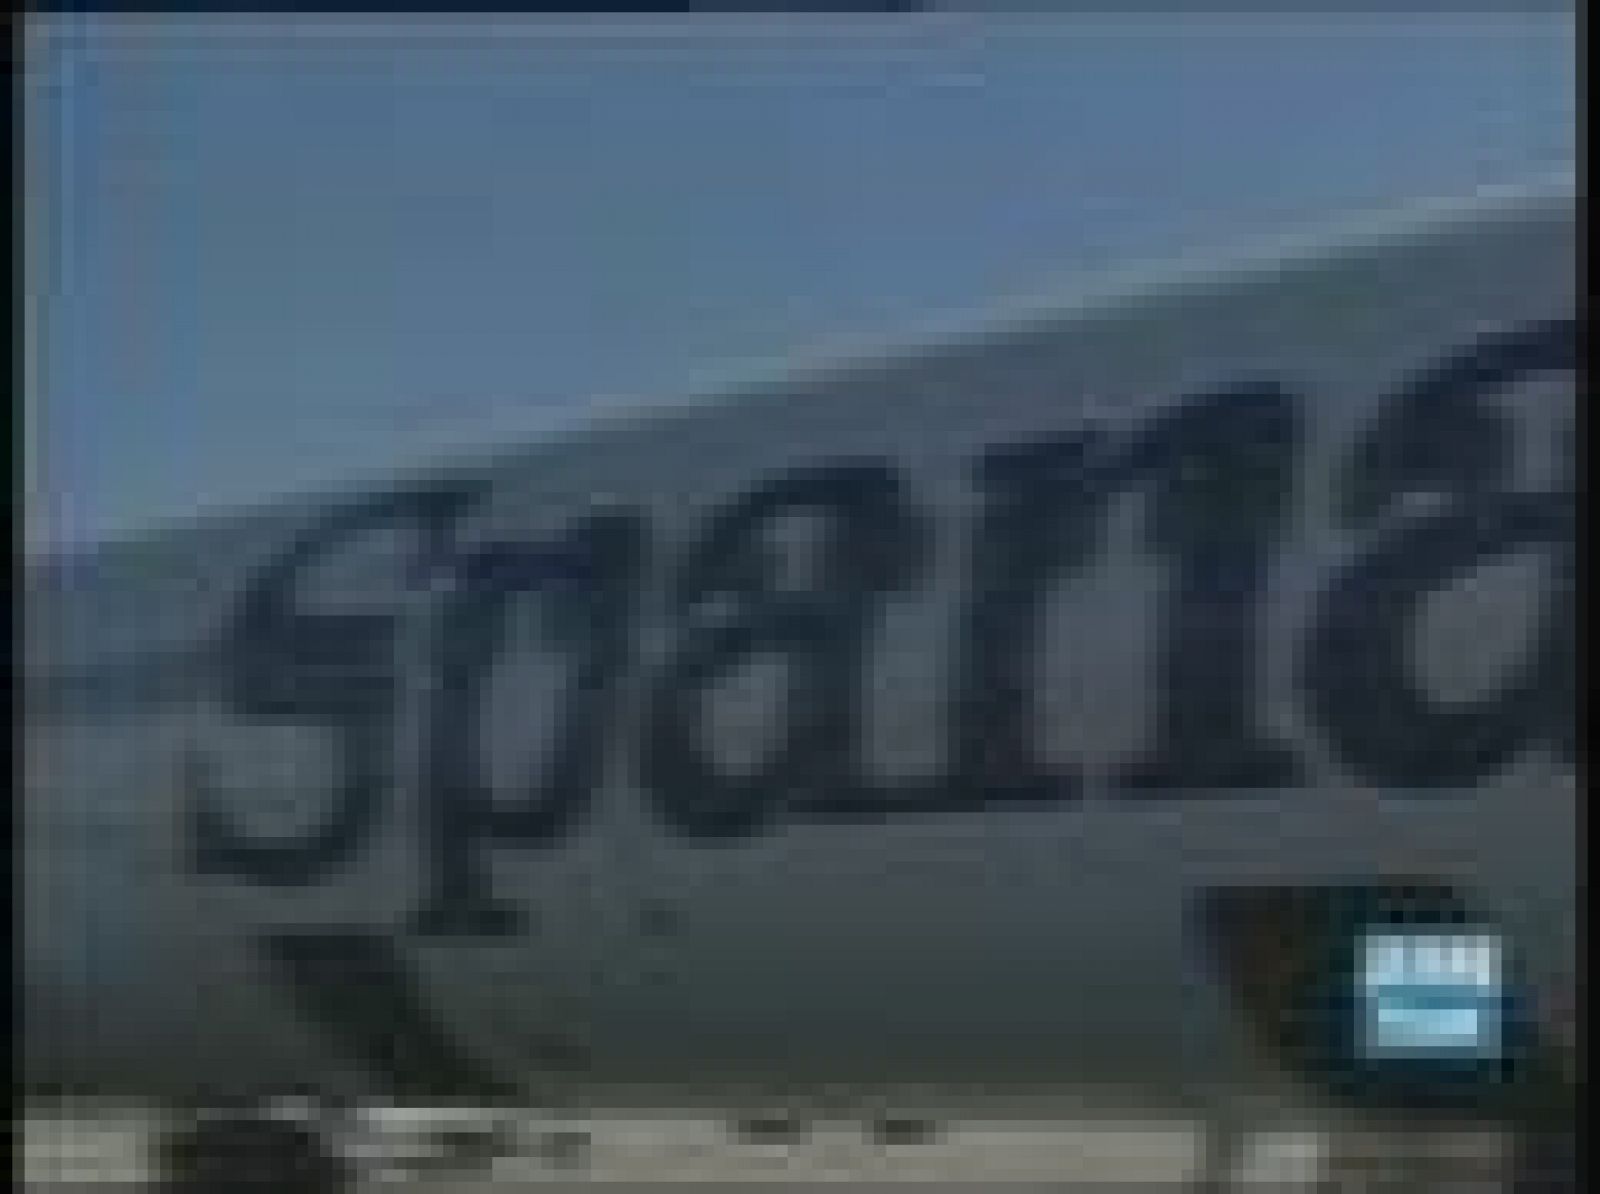 Spanair sufre el accidente más grave desde que empezó a volar en 1988 y llega en un momento muy delicado para la compañía que está inmersa en un plan de reestructuración.